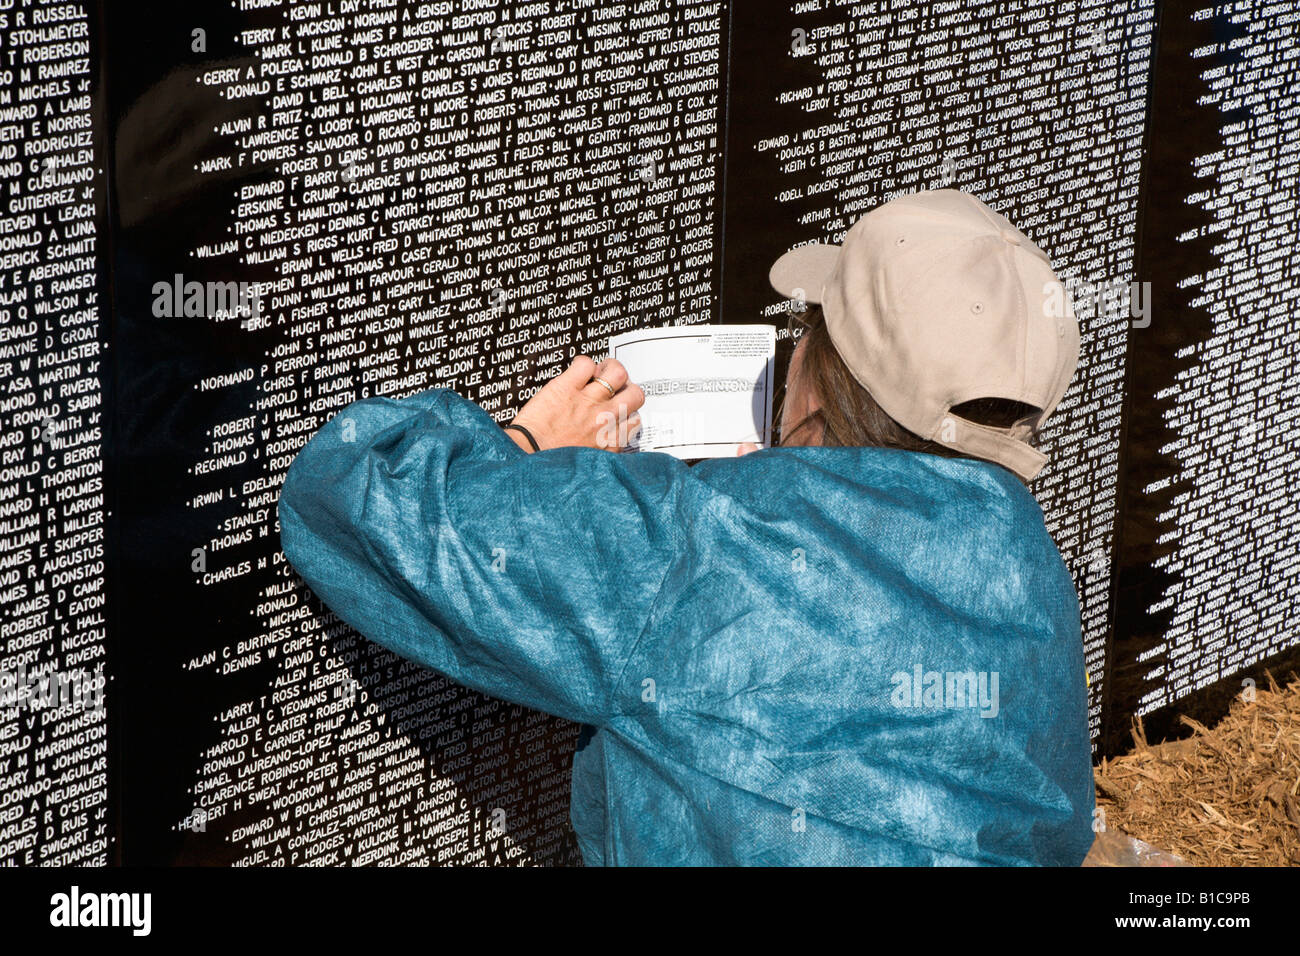 Familienangehöriger eines gefallenen Soldaten in Vietnam-Krieg macht Eindruck des Namens auf Reisen Mauer der Erinnerung Stockfoto